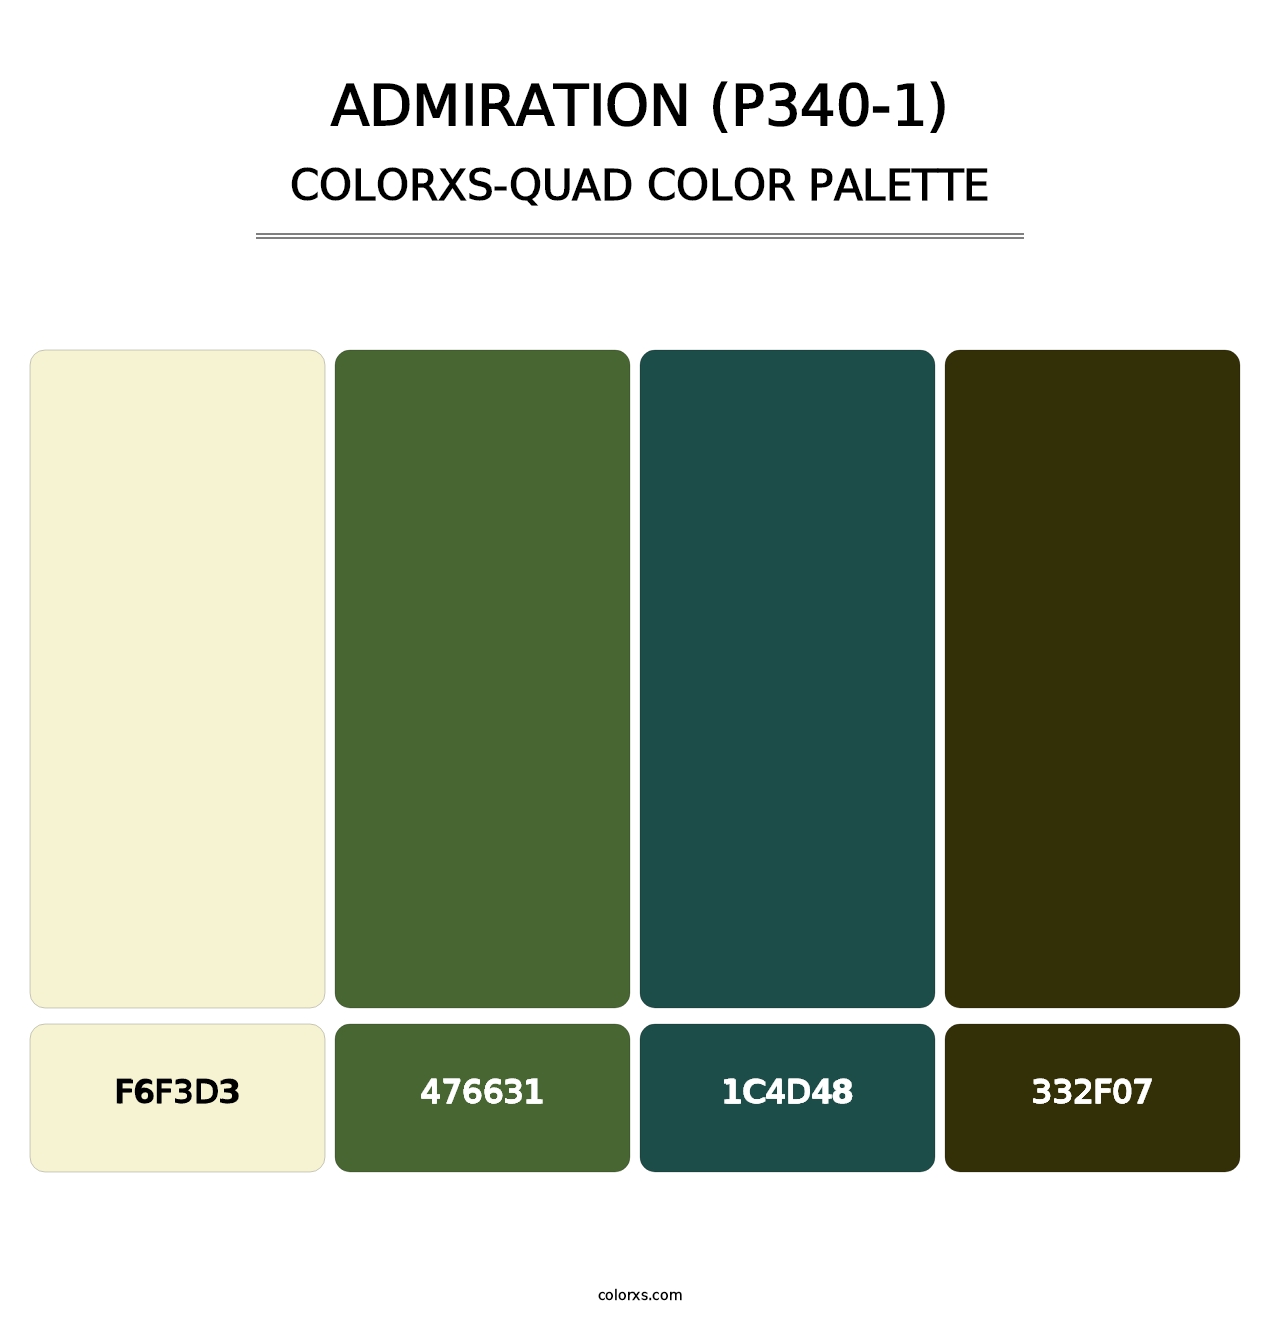 Admiration (P340-1) - Colorxs Quad Palette